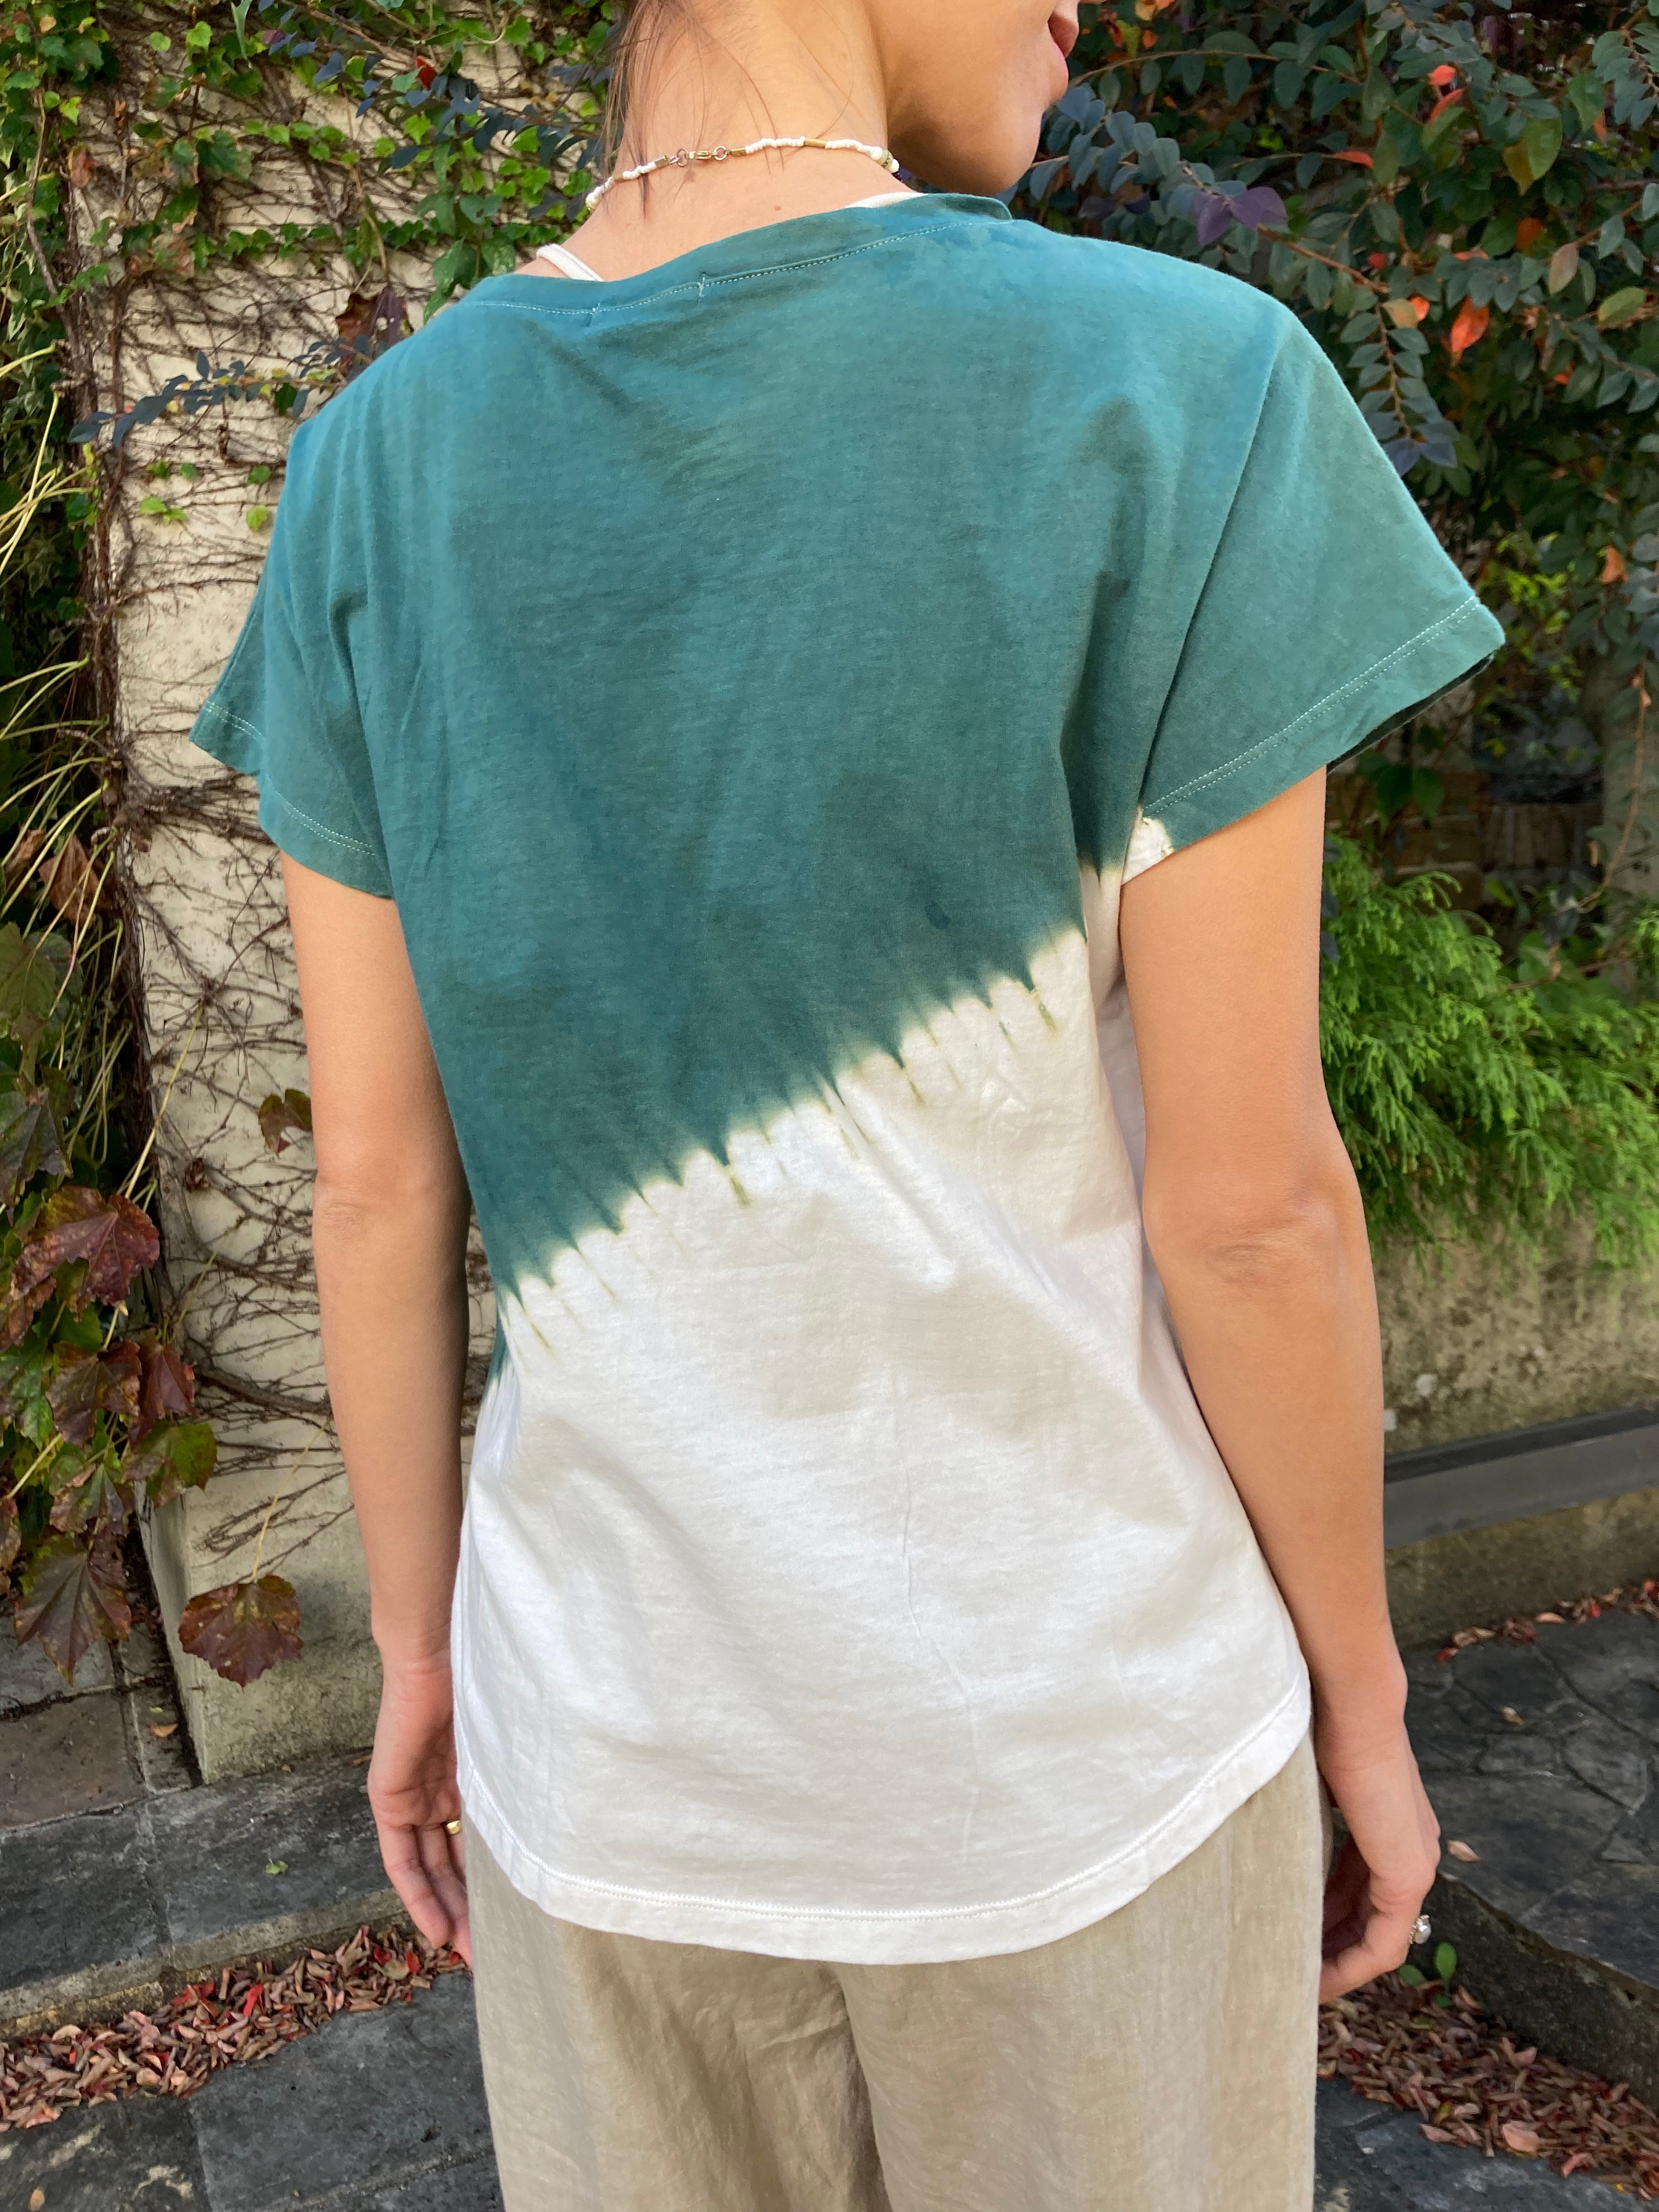 【限定ユニークアイテム】オーガニックコットンTシャツ / Organic cotton Tshirts